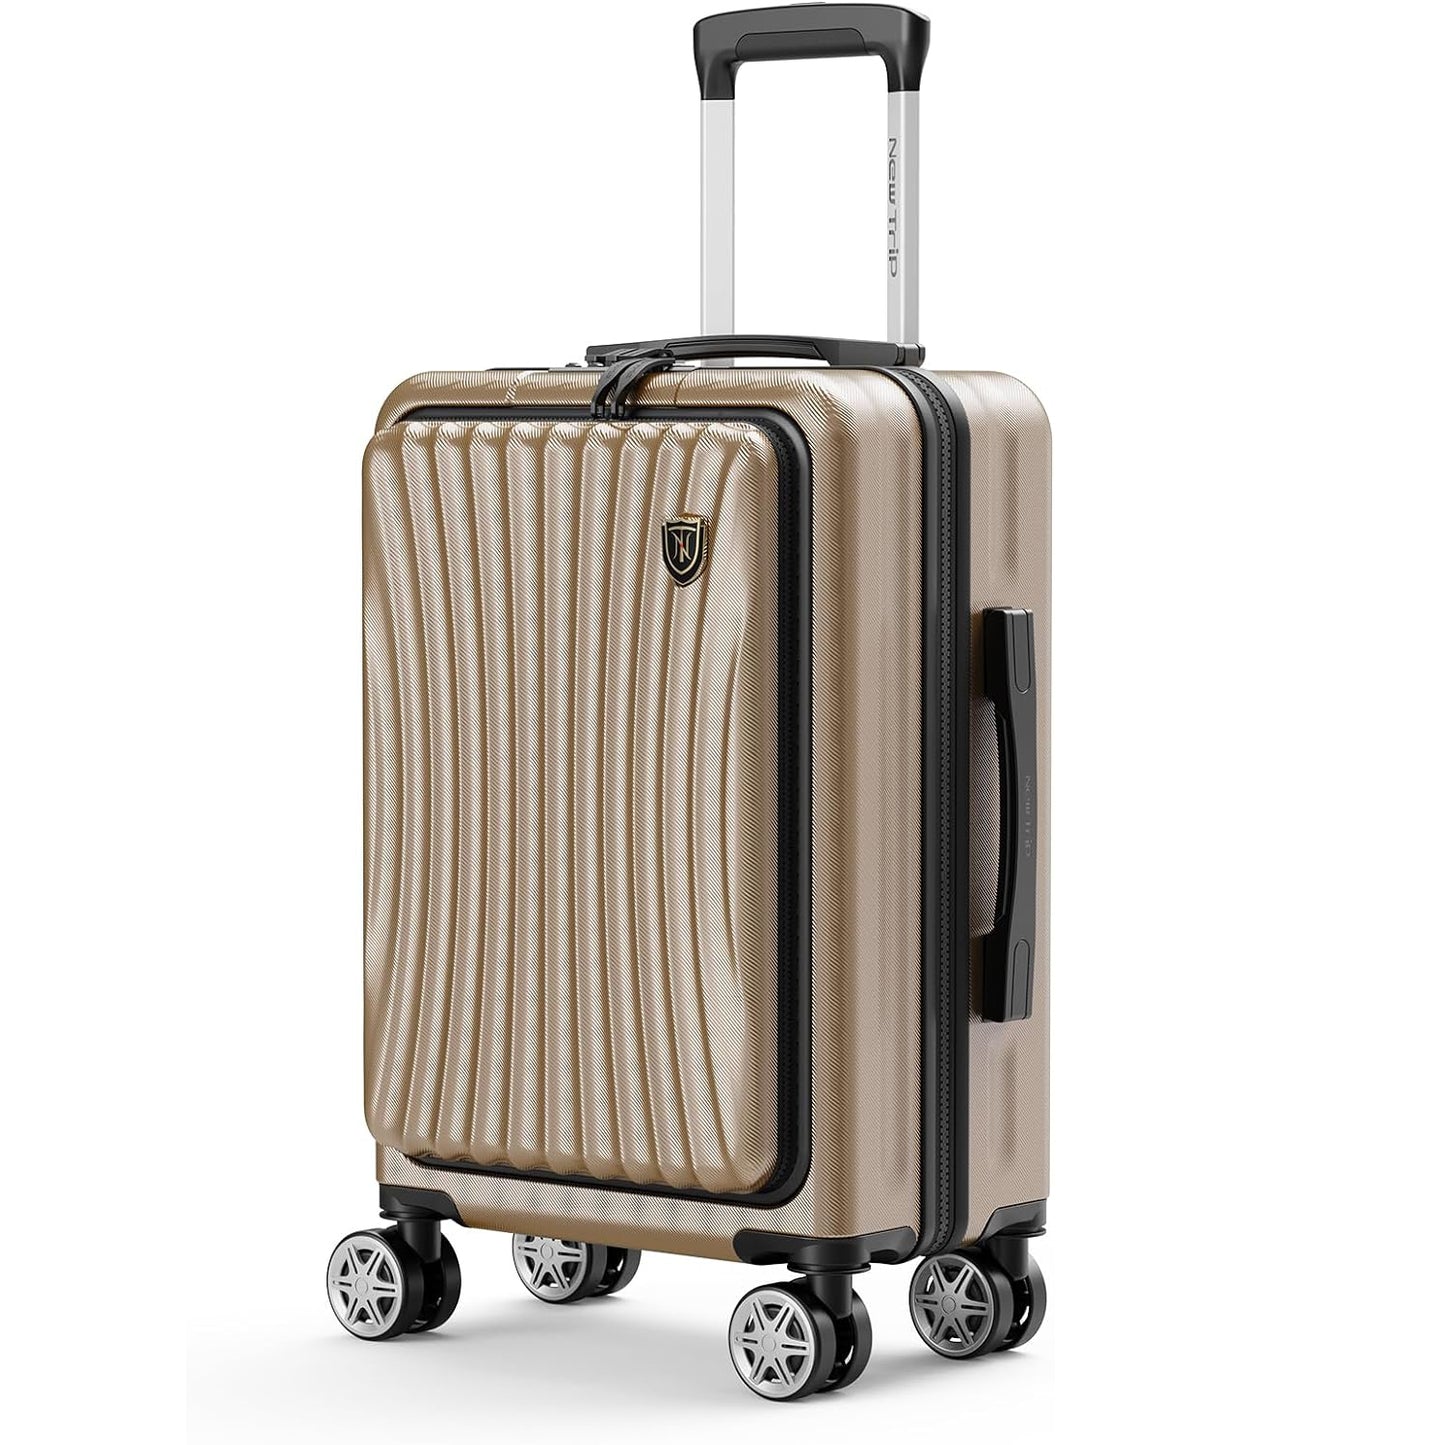 [New Trip] キャリーケース フロントオープン 機内持ち込み USBポート付き ストッパー付き スーツケース  旅行 出張 1-4泊 40リットル Sサイズ シャンパンゴールド